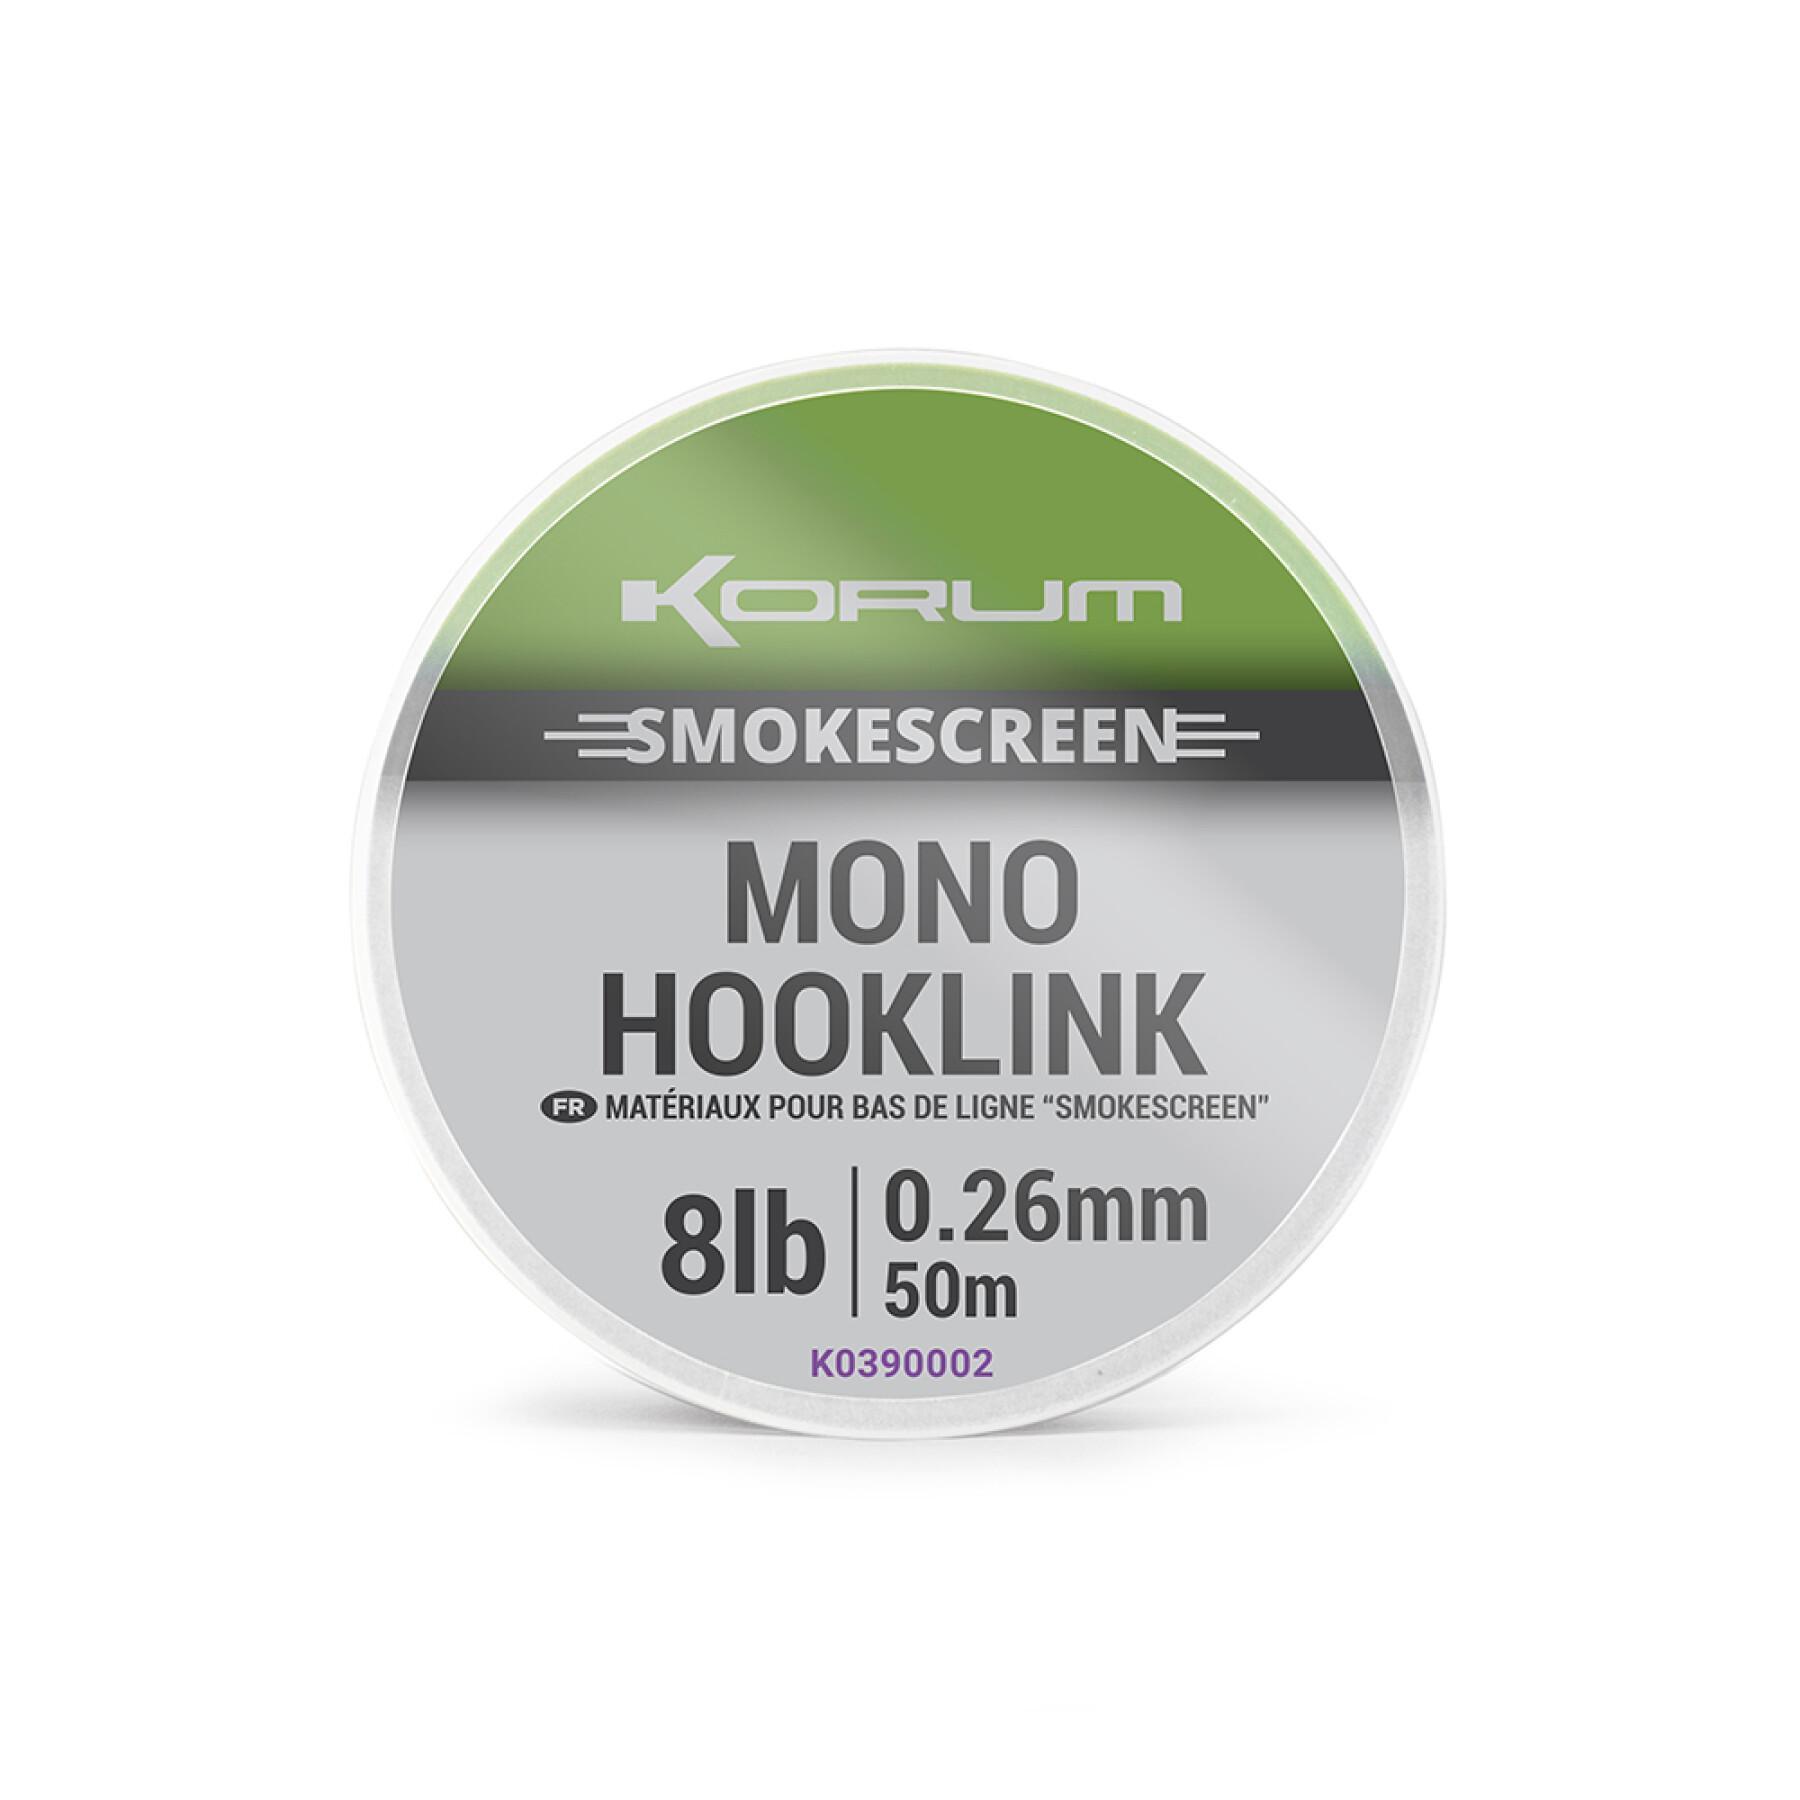 Link Korum smokescreen mono hooklink